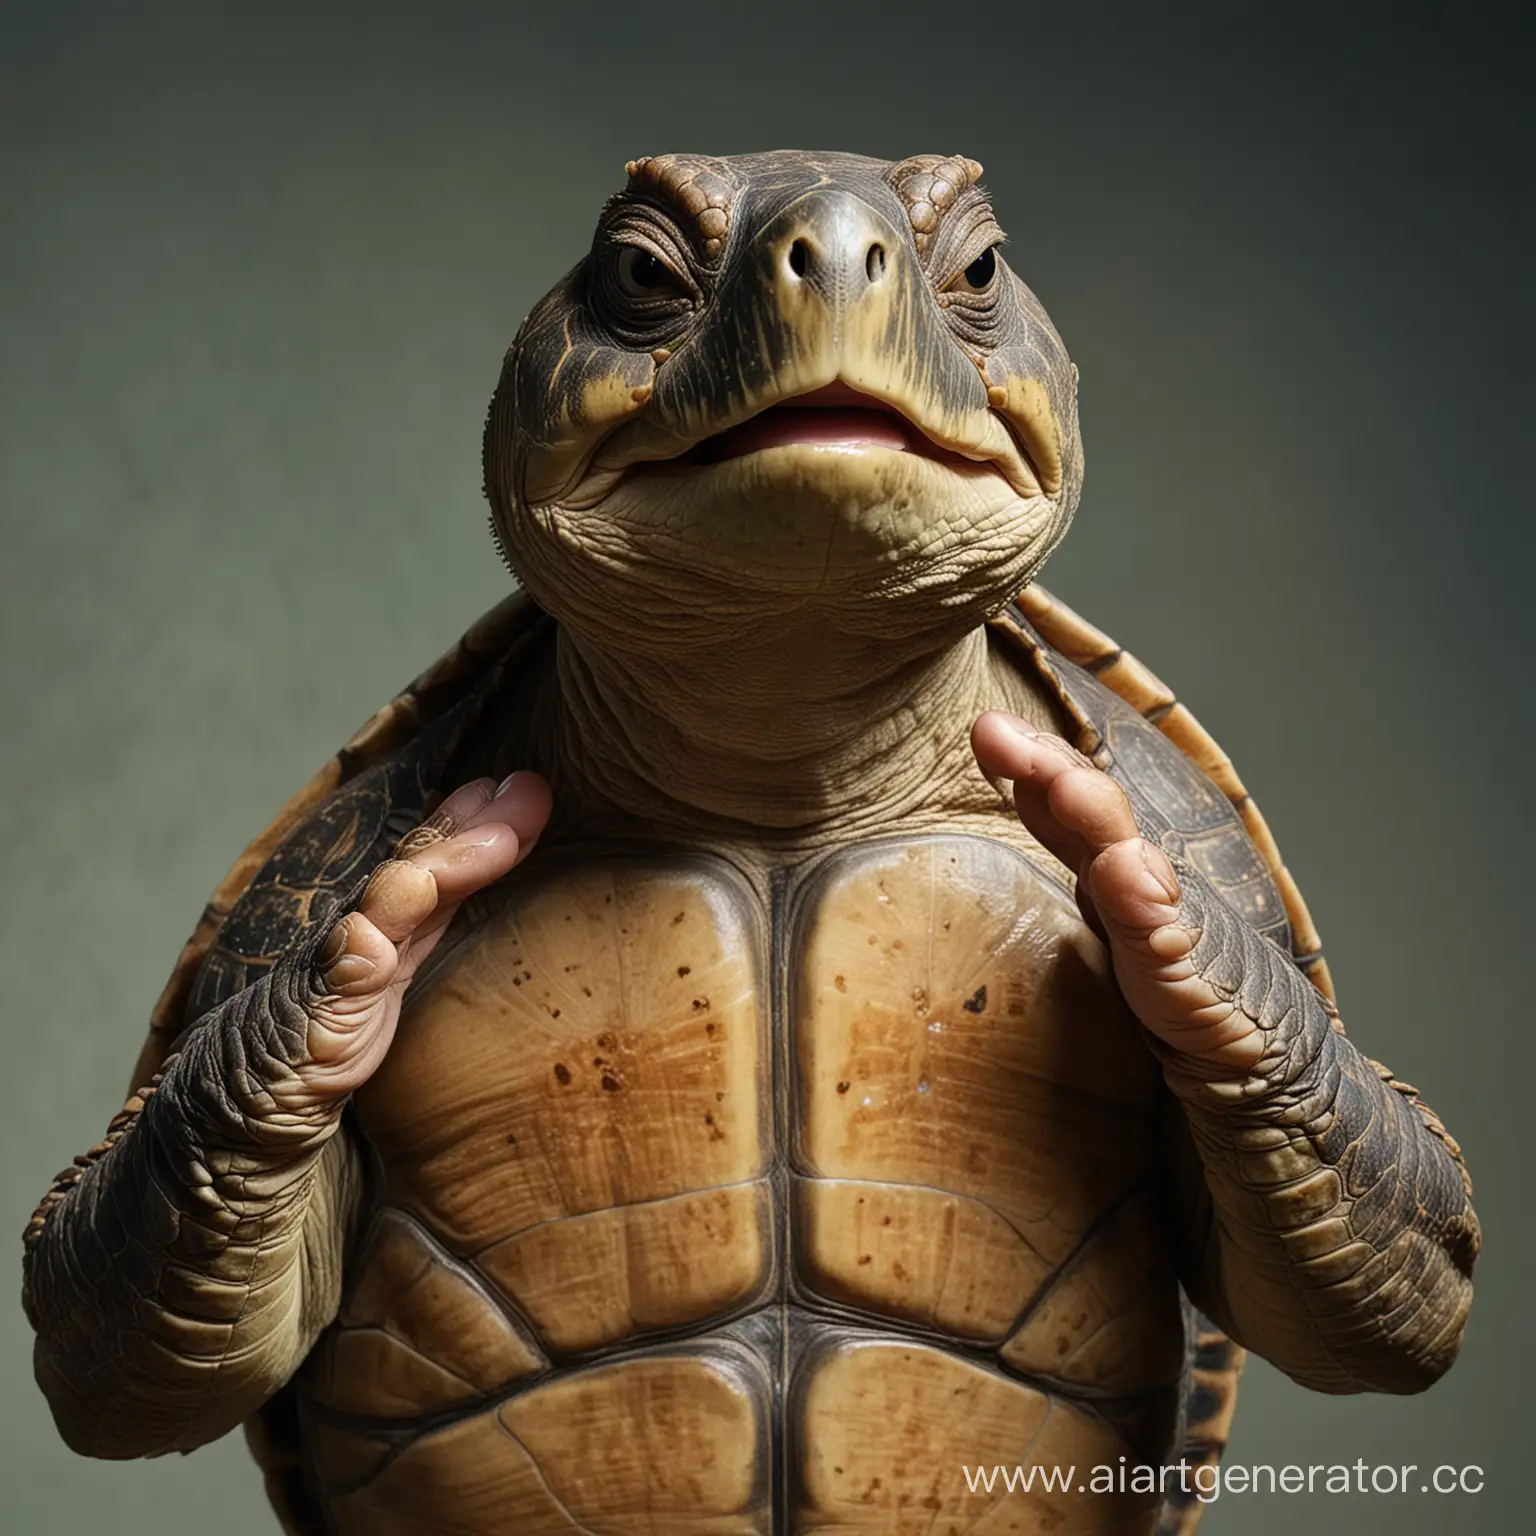 черепаха-человек стоя на задних ногах и задрав голову вверх с довольным выражением лица и закрытыми глазами натирает себе щеки руками